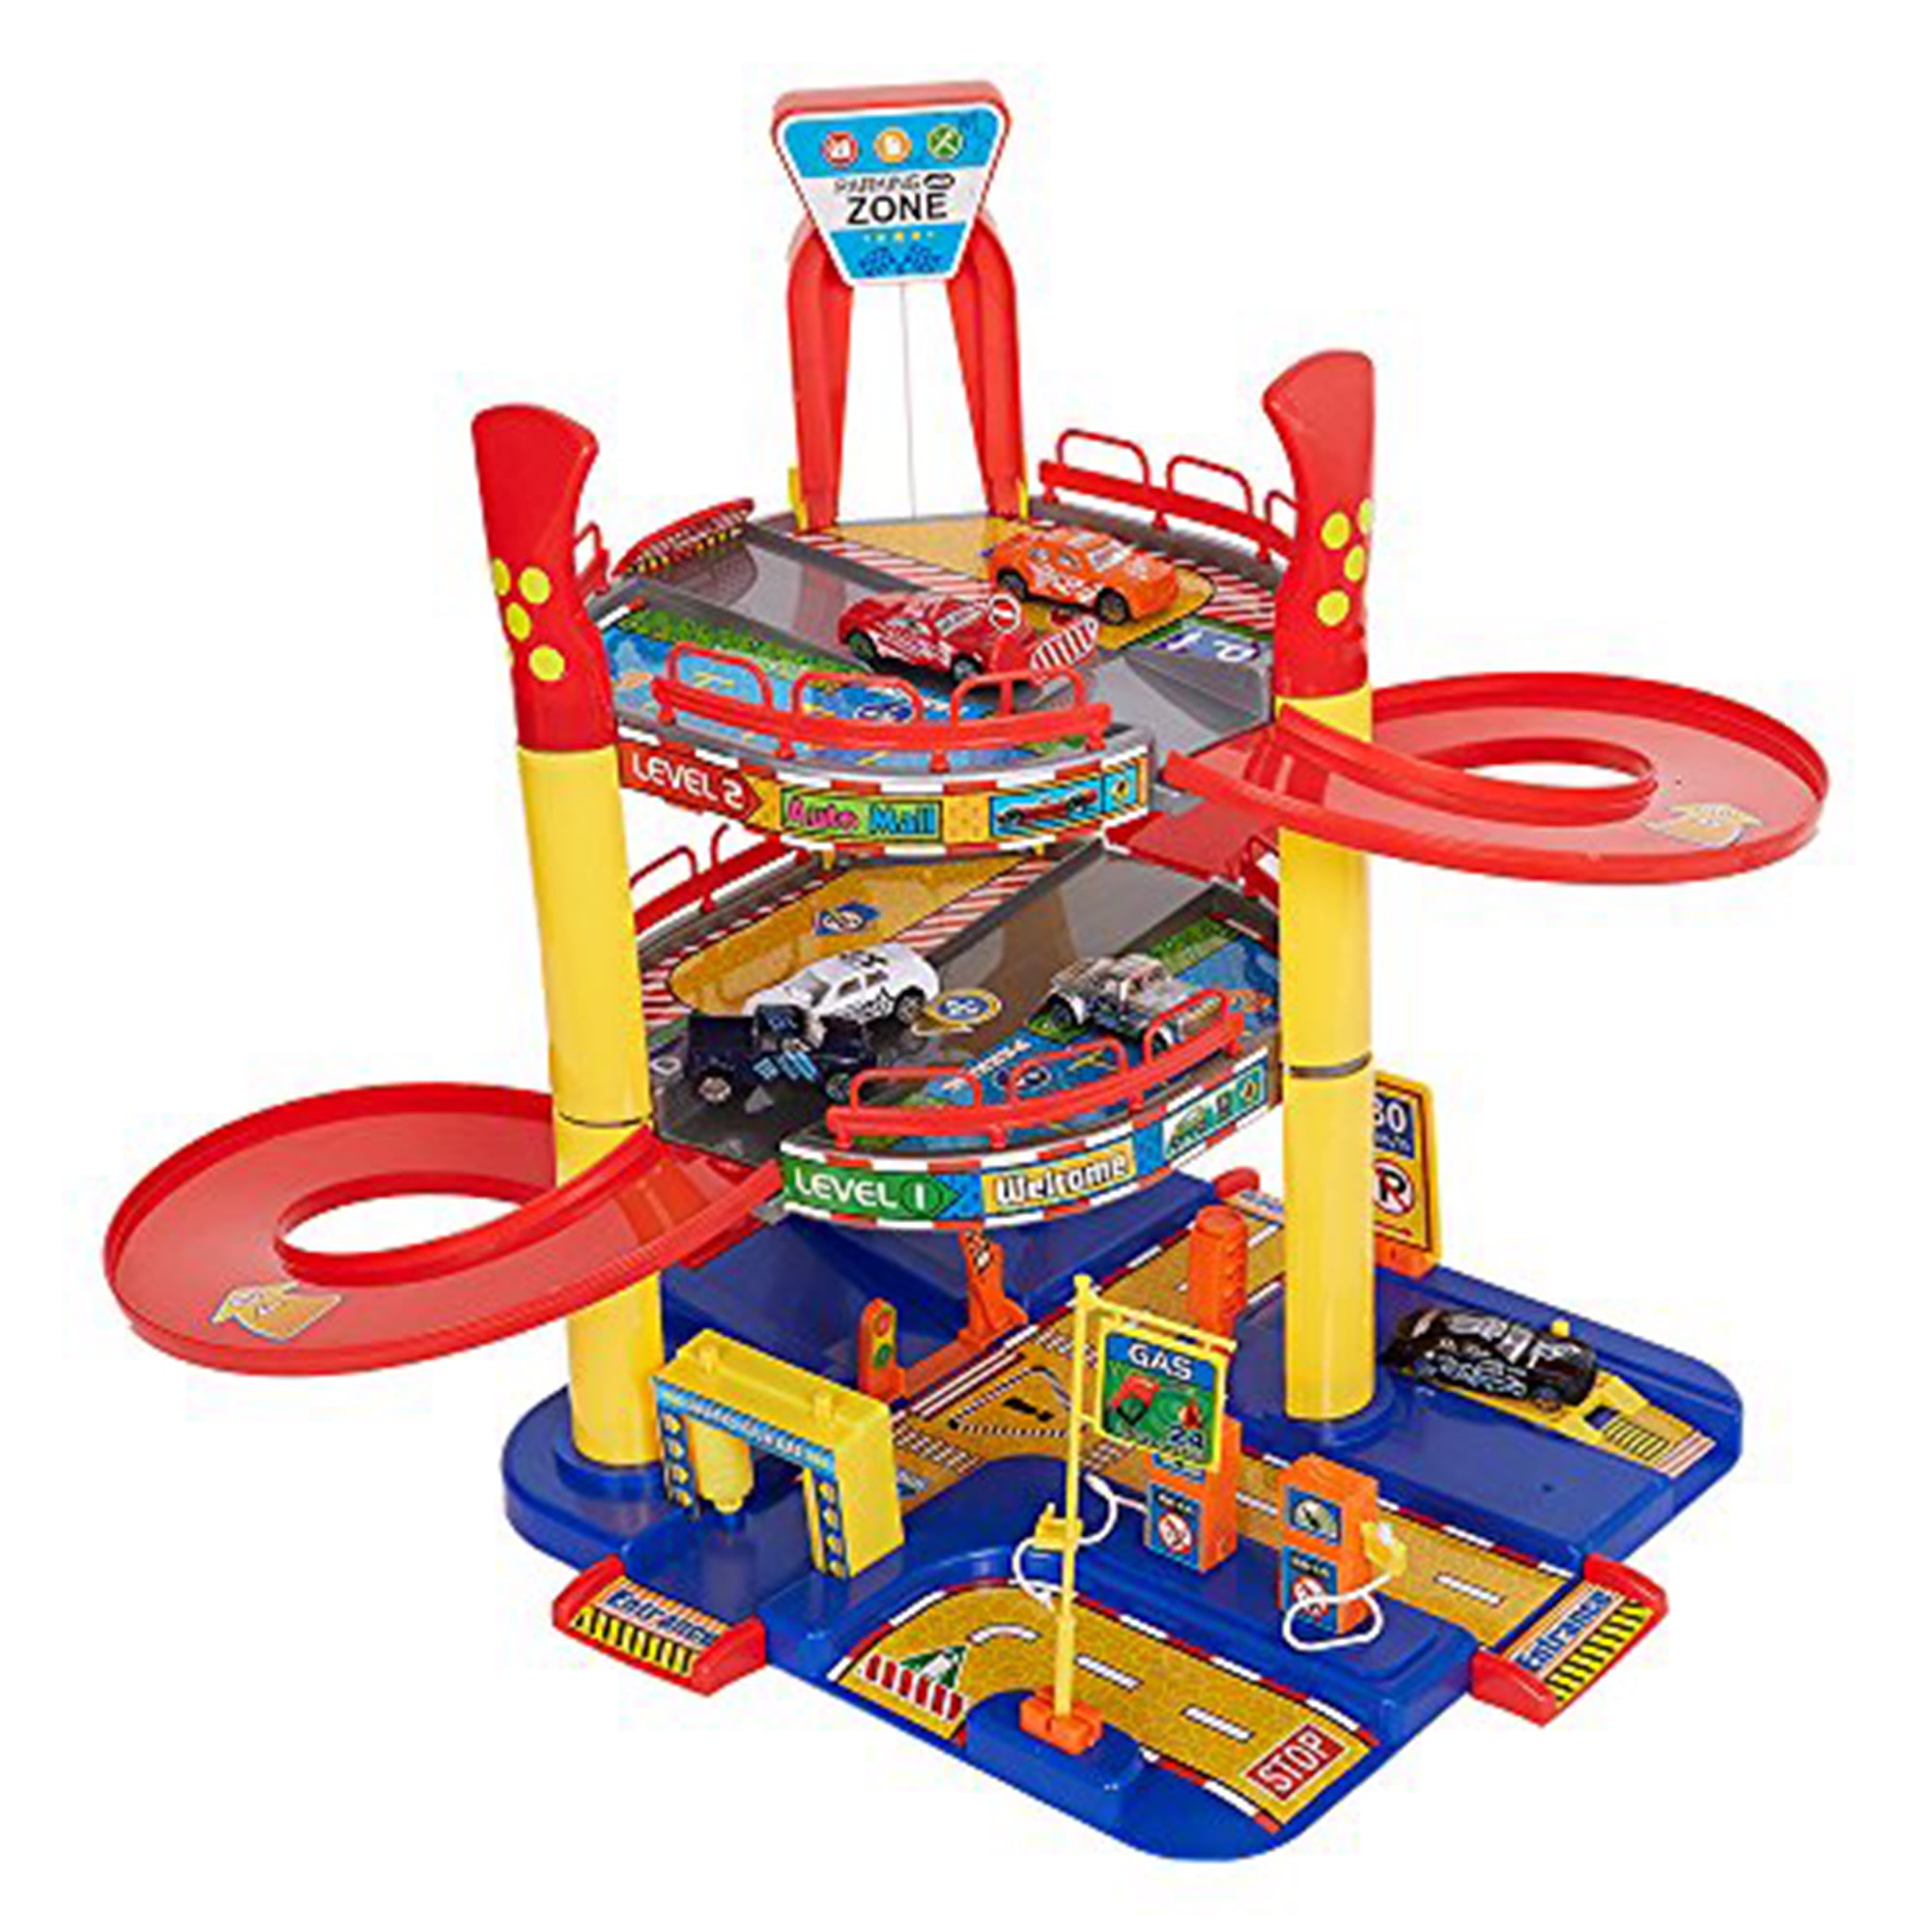 3 Level Circle Garage Kids Play 5 Vehicles Racing Ramp Toy Set Xmas Gift 